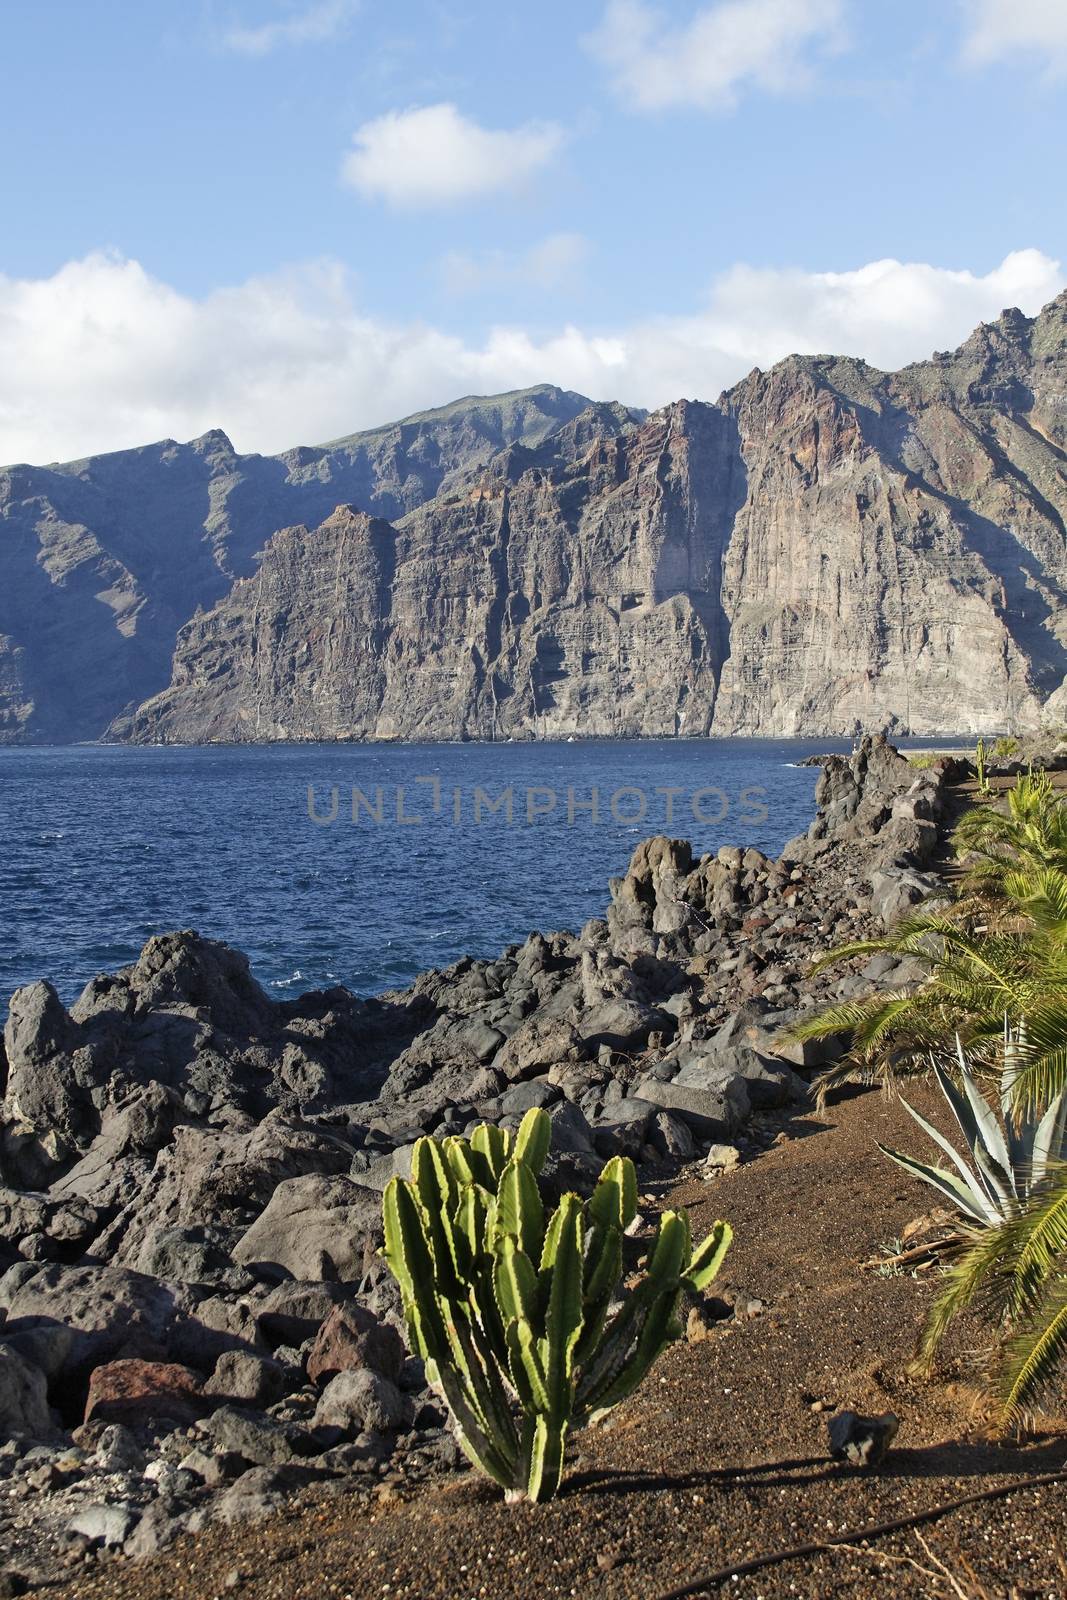 The highest european cliff at Tenerife - Los Gigantos